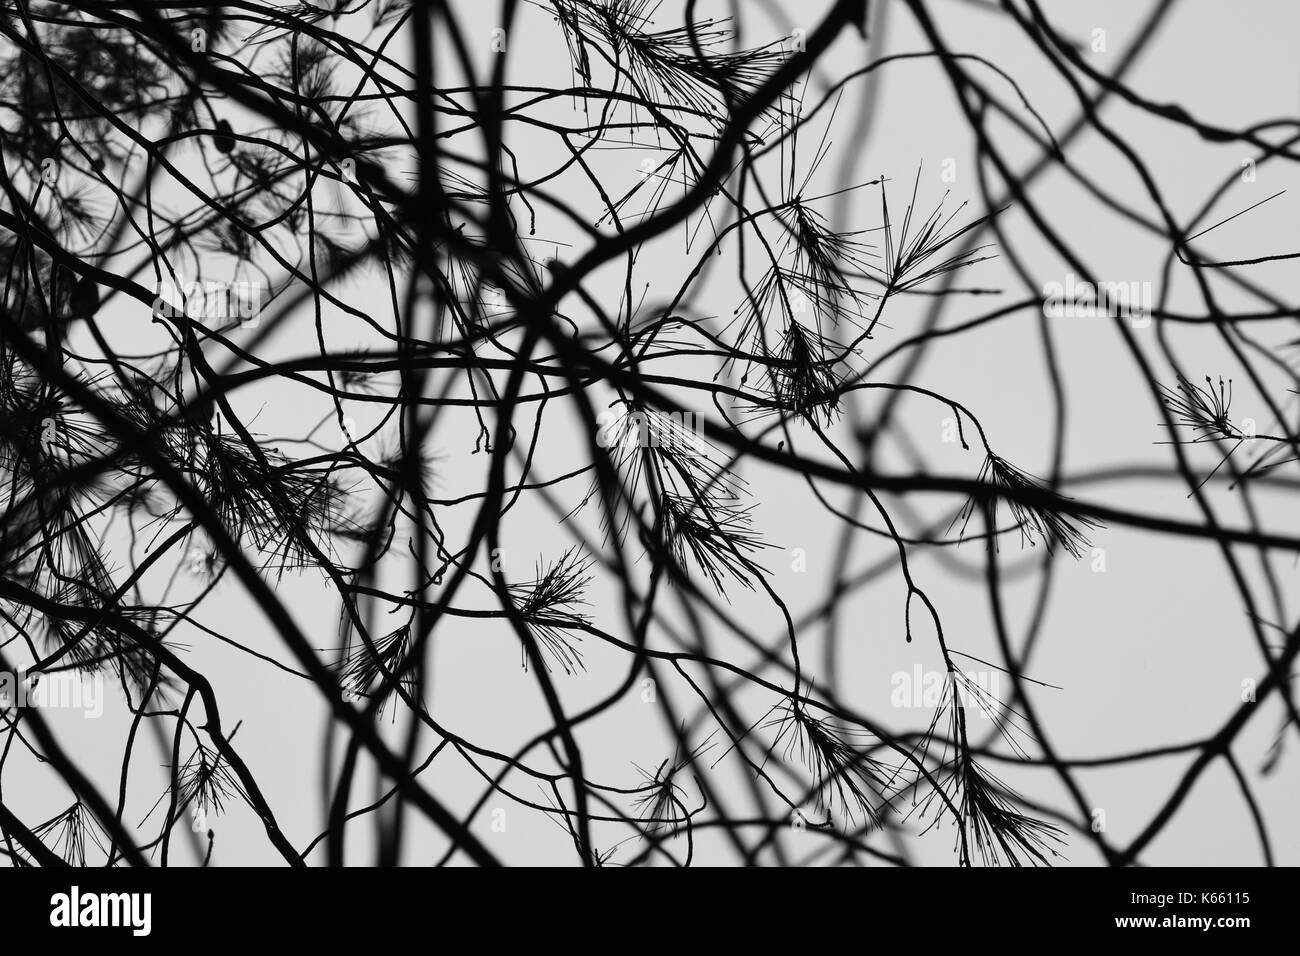 Les aiguilles de pins avec gouttes de pluie obscurcie par branches floues. noir et blanc jour de pluie nature abstraite. Banque D'Images